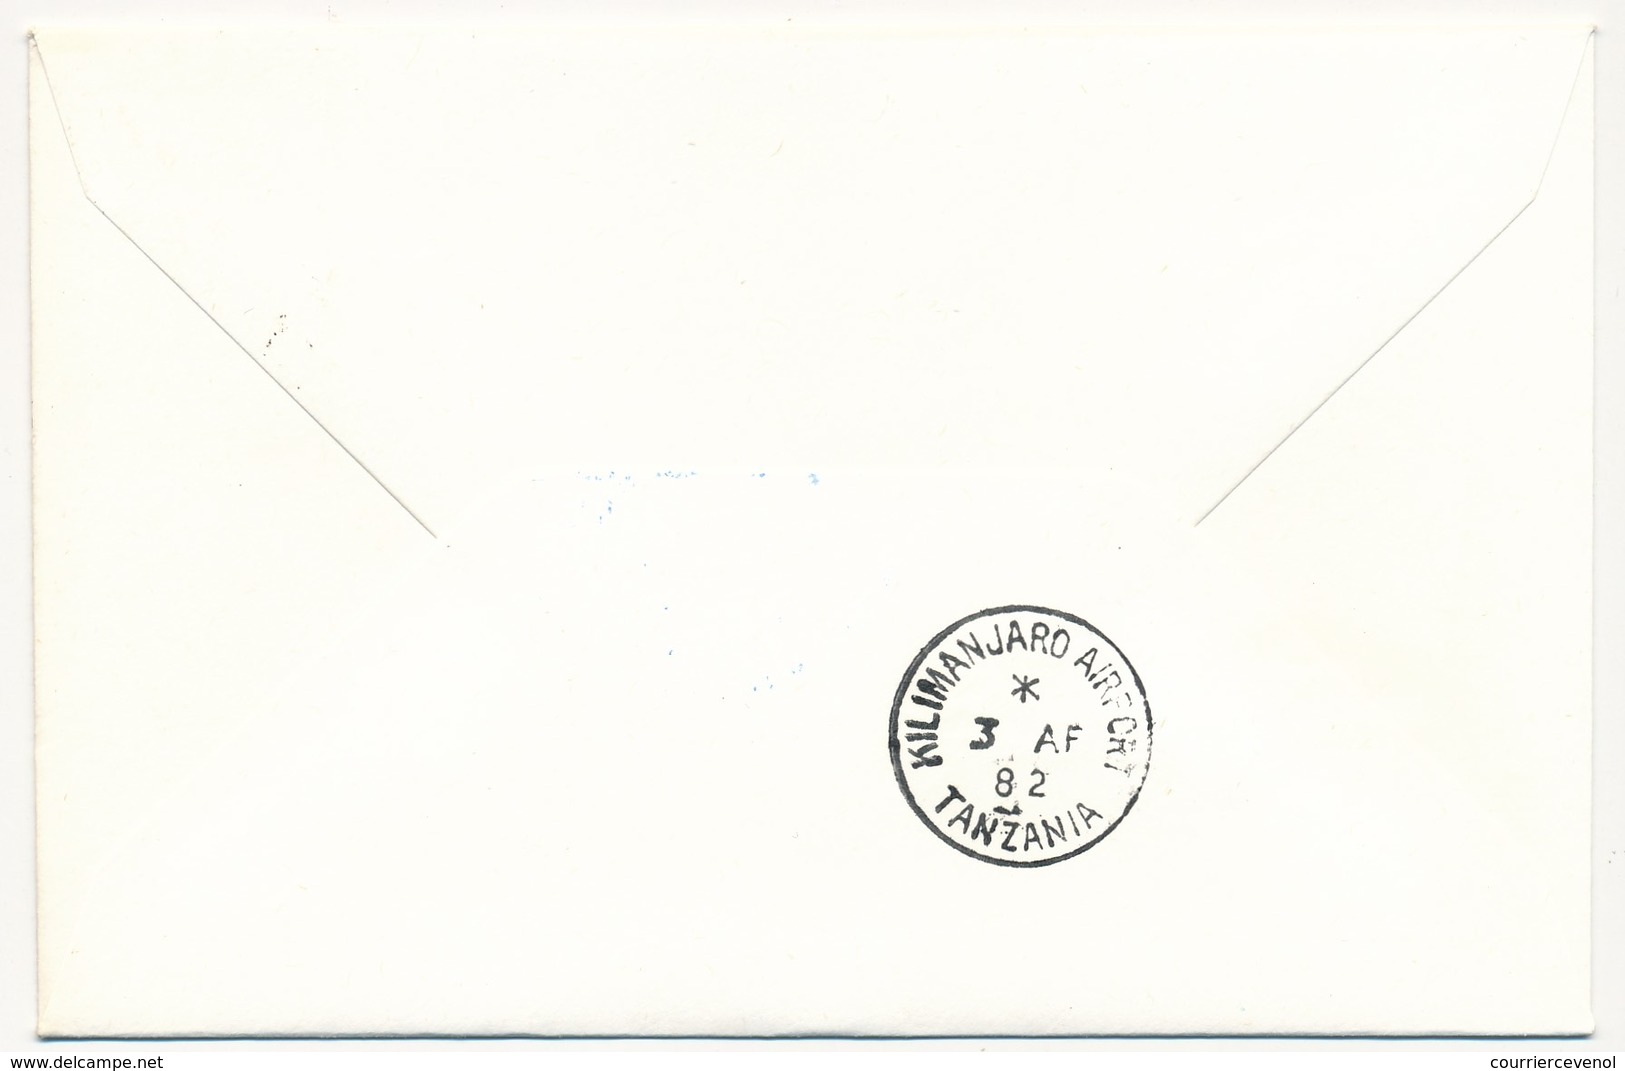 TANZANIE - 2 Enveloppes SABENA - 1ere Liaison Aérienne - KILIMANJARO - BRUXELLES - 3.4.1982 Et Aller - Tanzanie (1964-...)